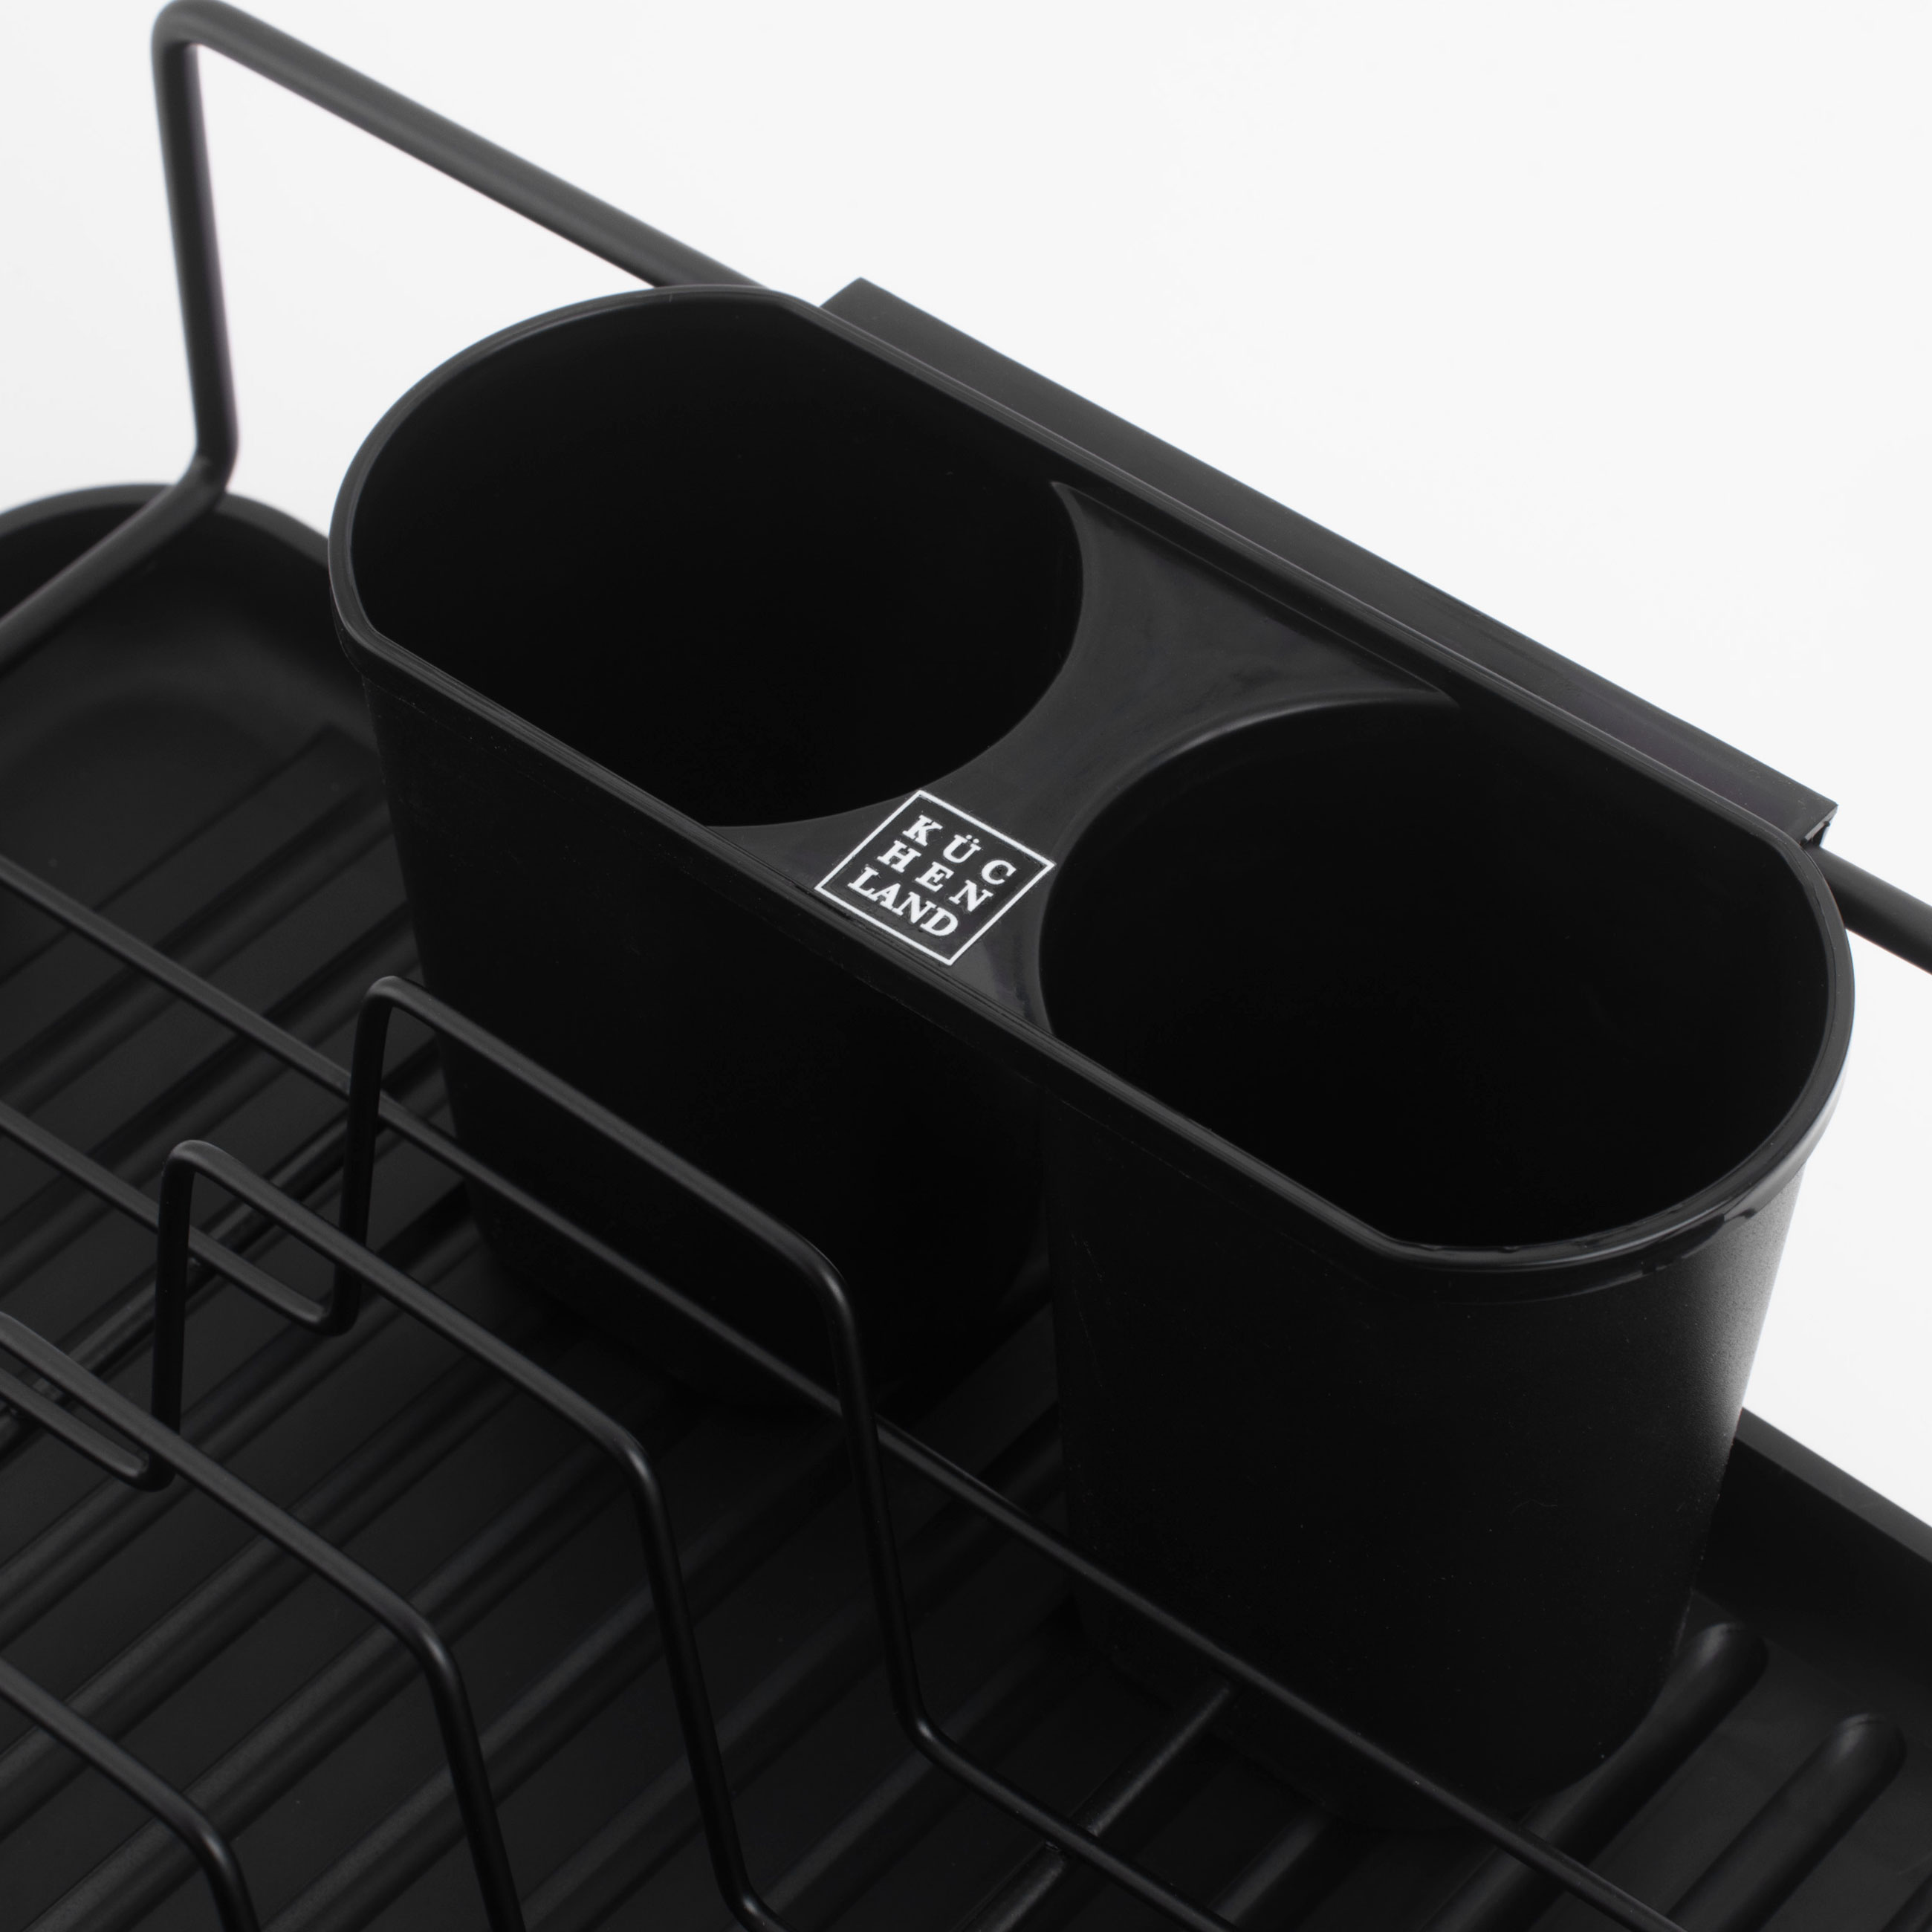 Сушилка для посуды, 42х27 см, с поддоном, пластик/металл, черная, Black style изображение № 5